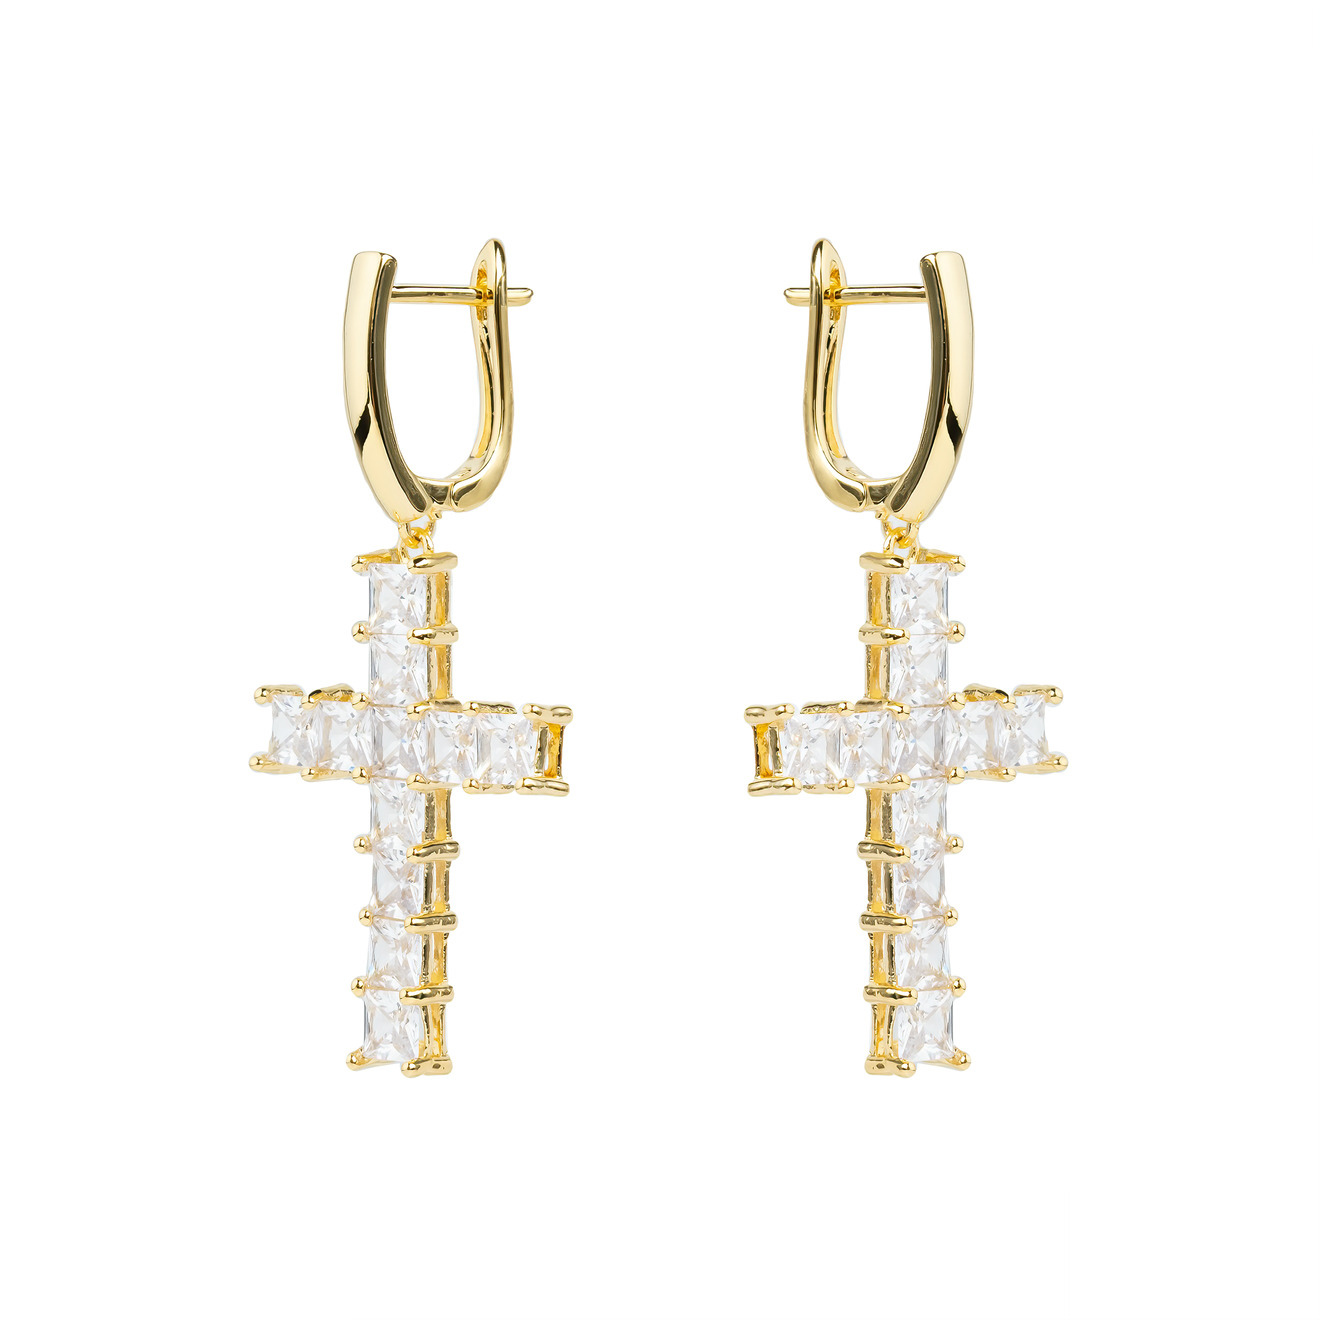 Herald Percy Золотистые серьги-кресты с кристаллами herald percy золотистые изогнутые серьги с кристаллами